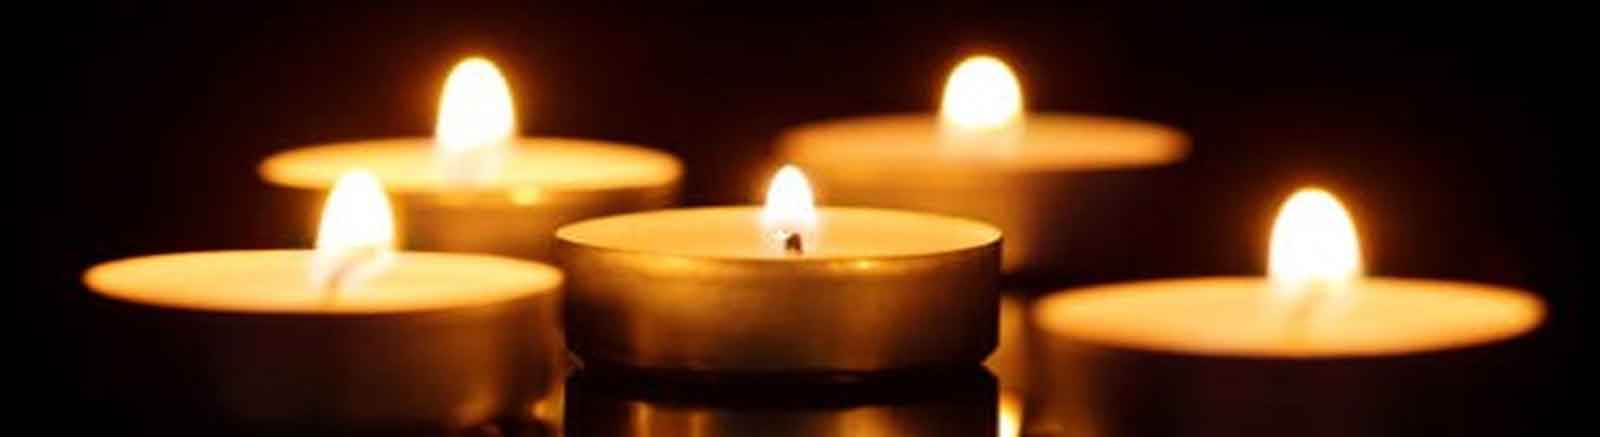 Un ensemble de bougies allumées dans une atmosphère sombre, créant une ambiance chaleureuse et méditative.